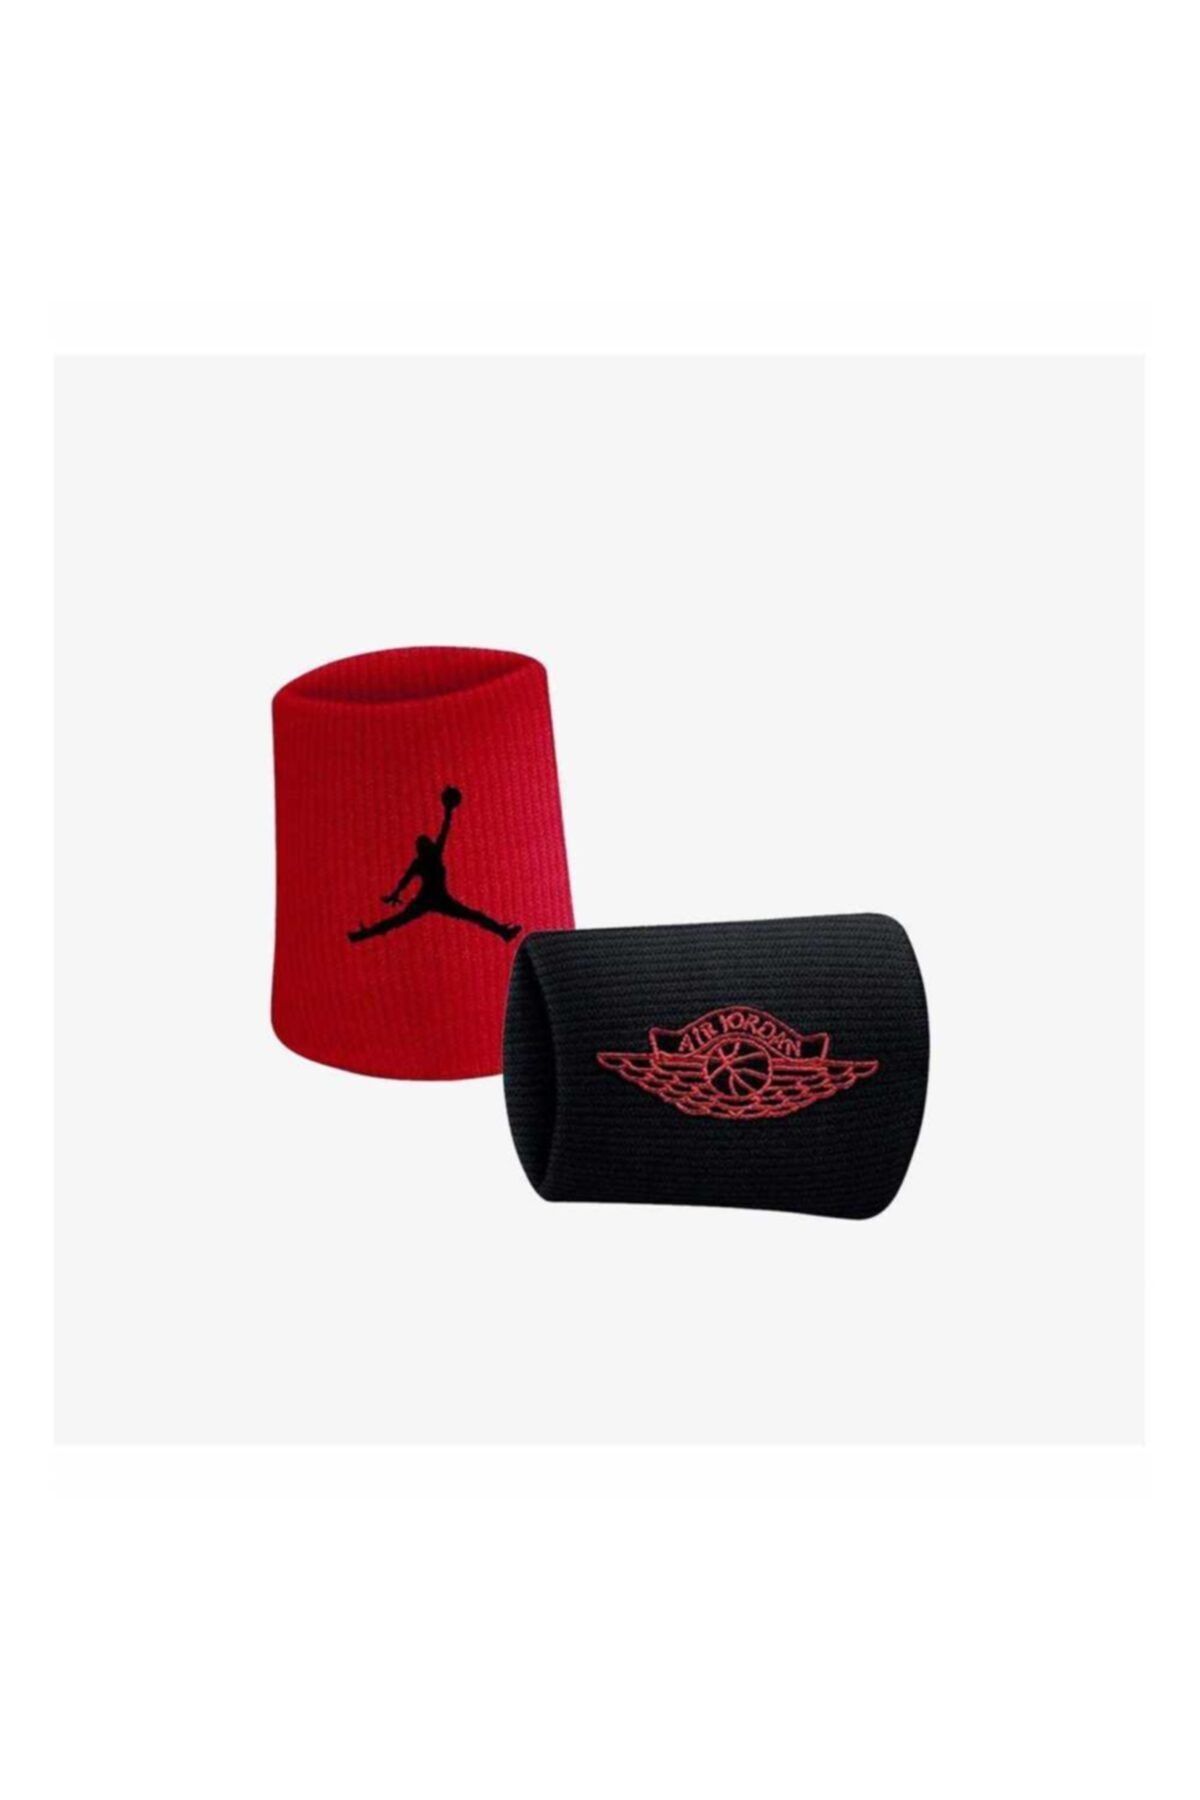 Nike Jordan Jumpman X Wıngs Wrıstbands 2.0 Gym Red Spor Bileklik